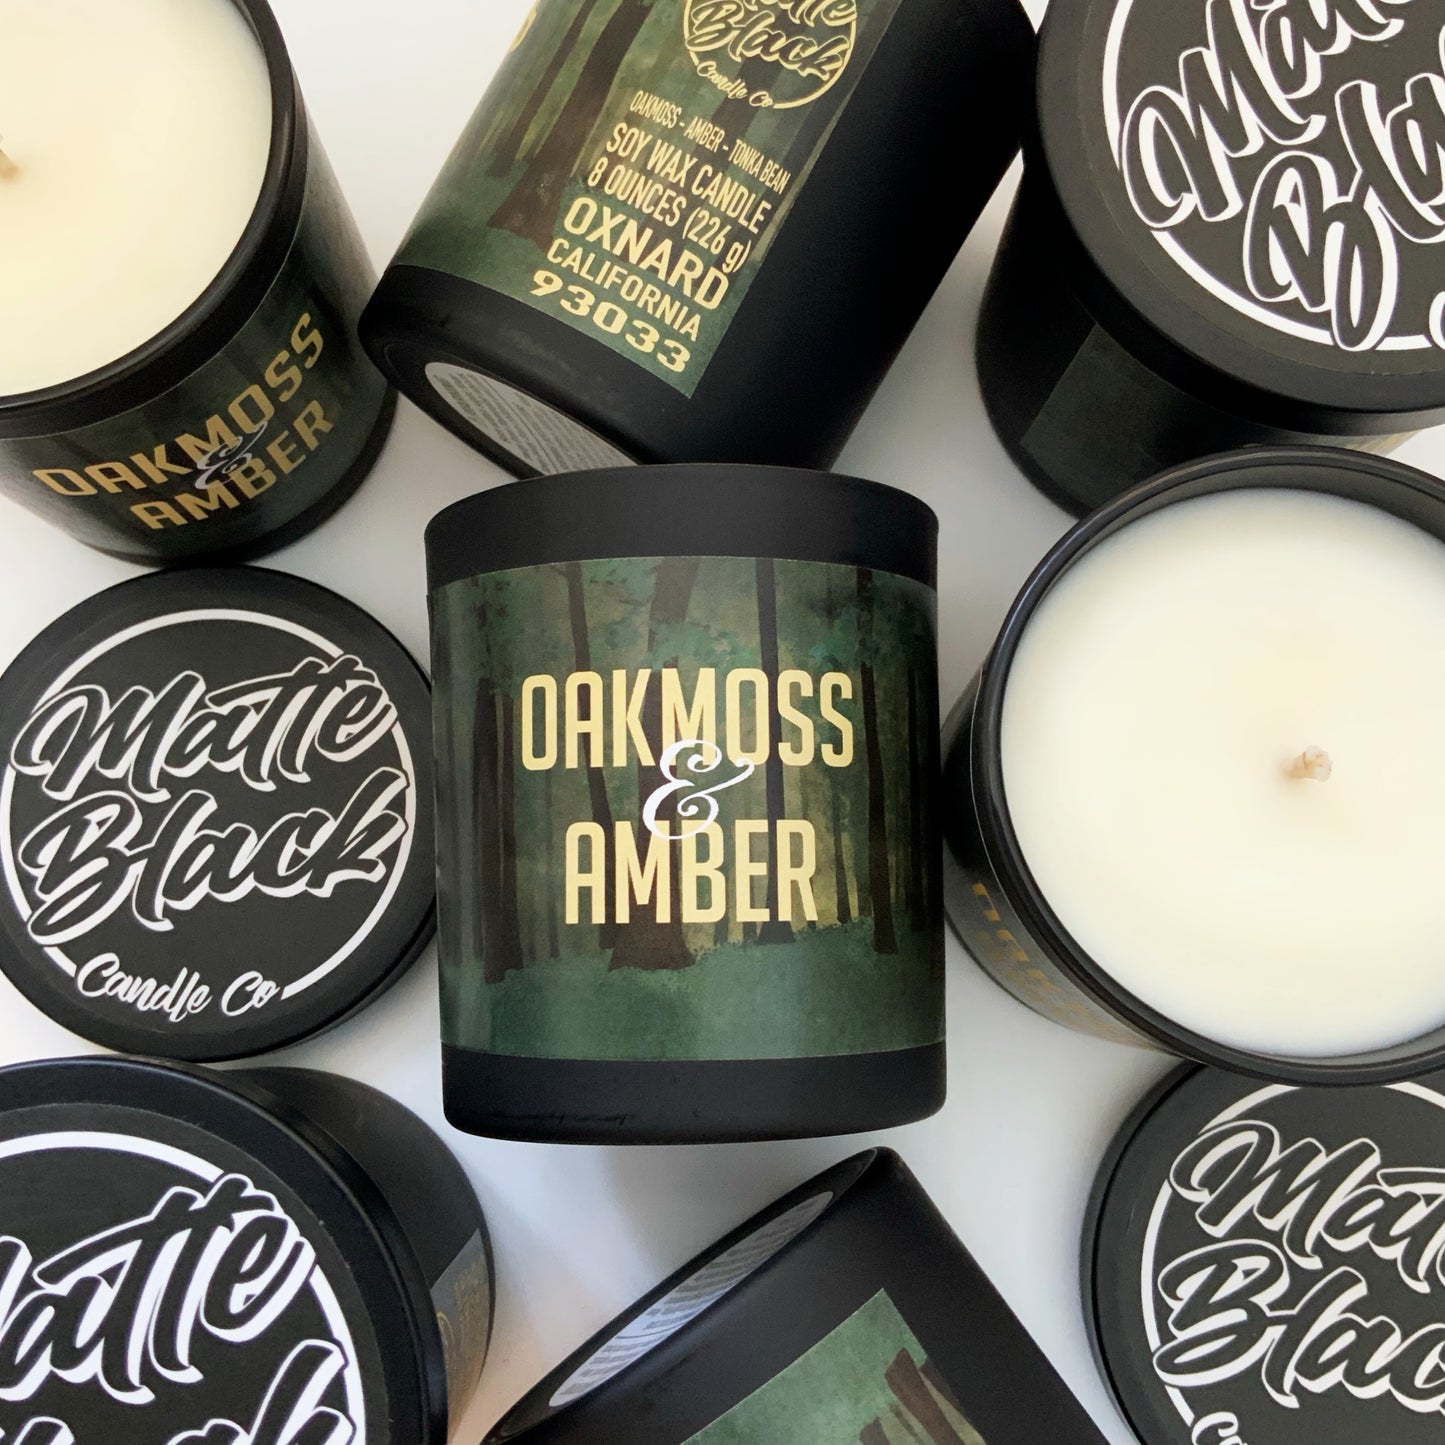 Oakmoss & Amber - Matte Black Candle Co